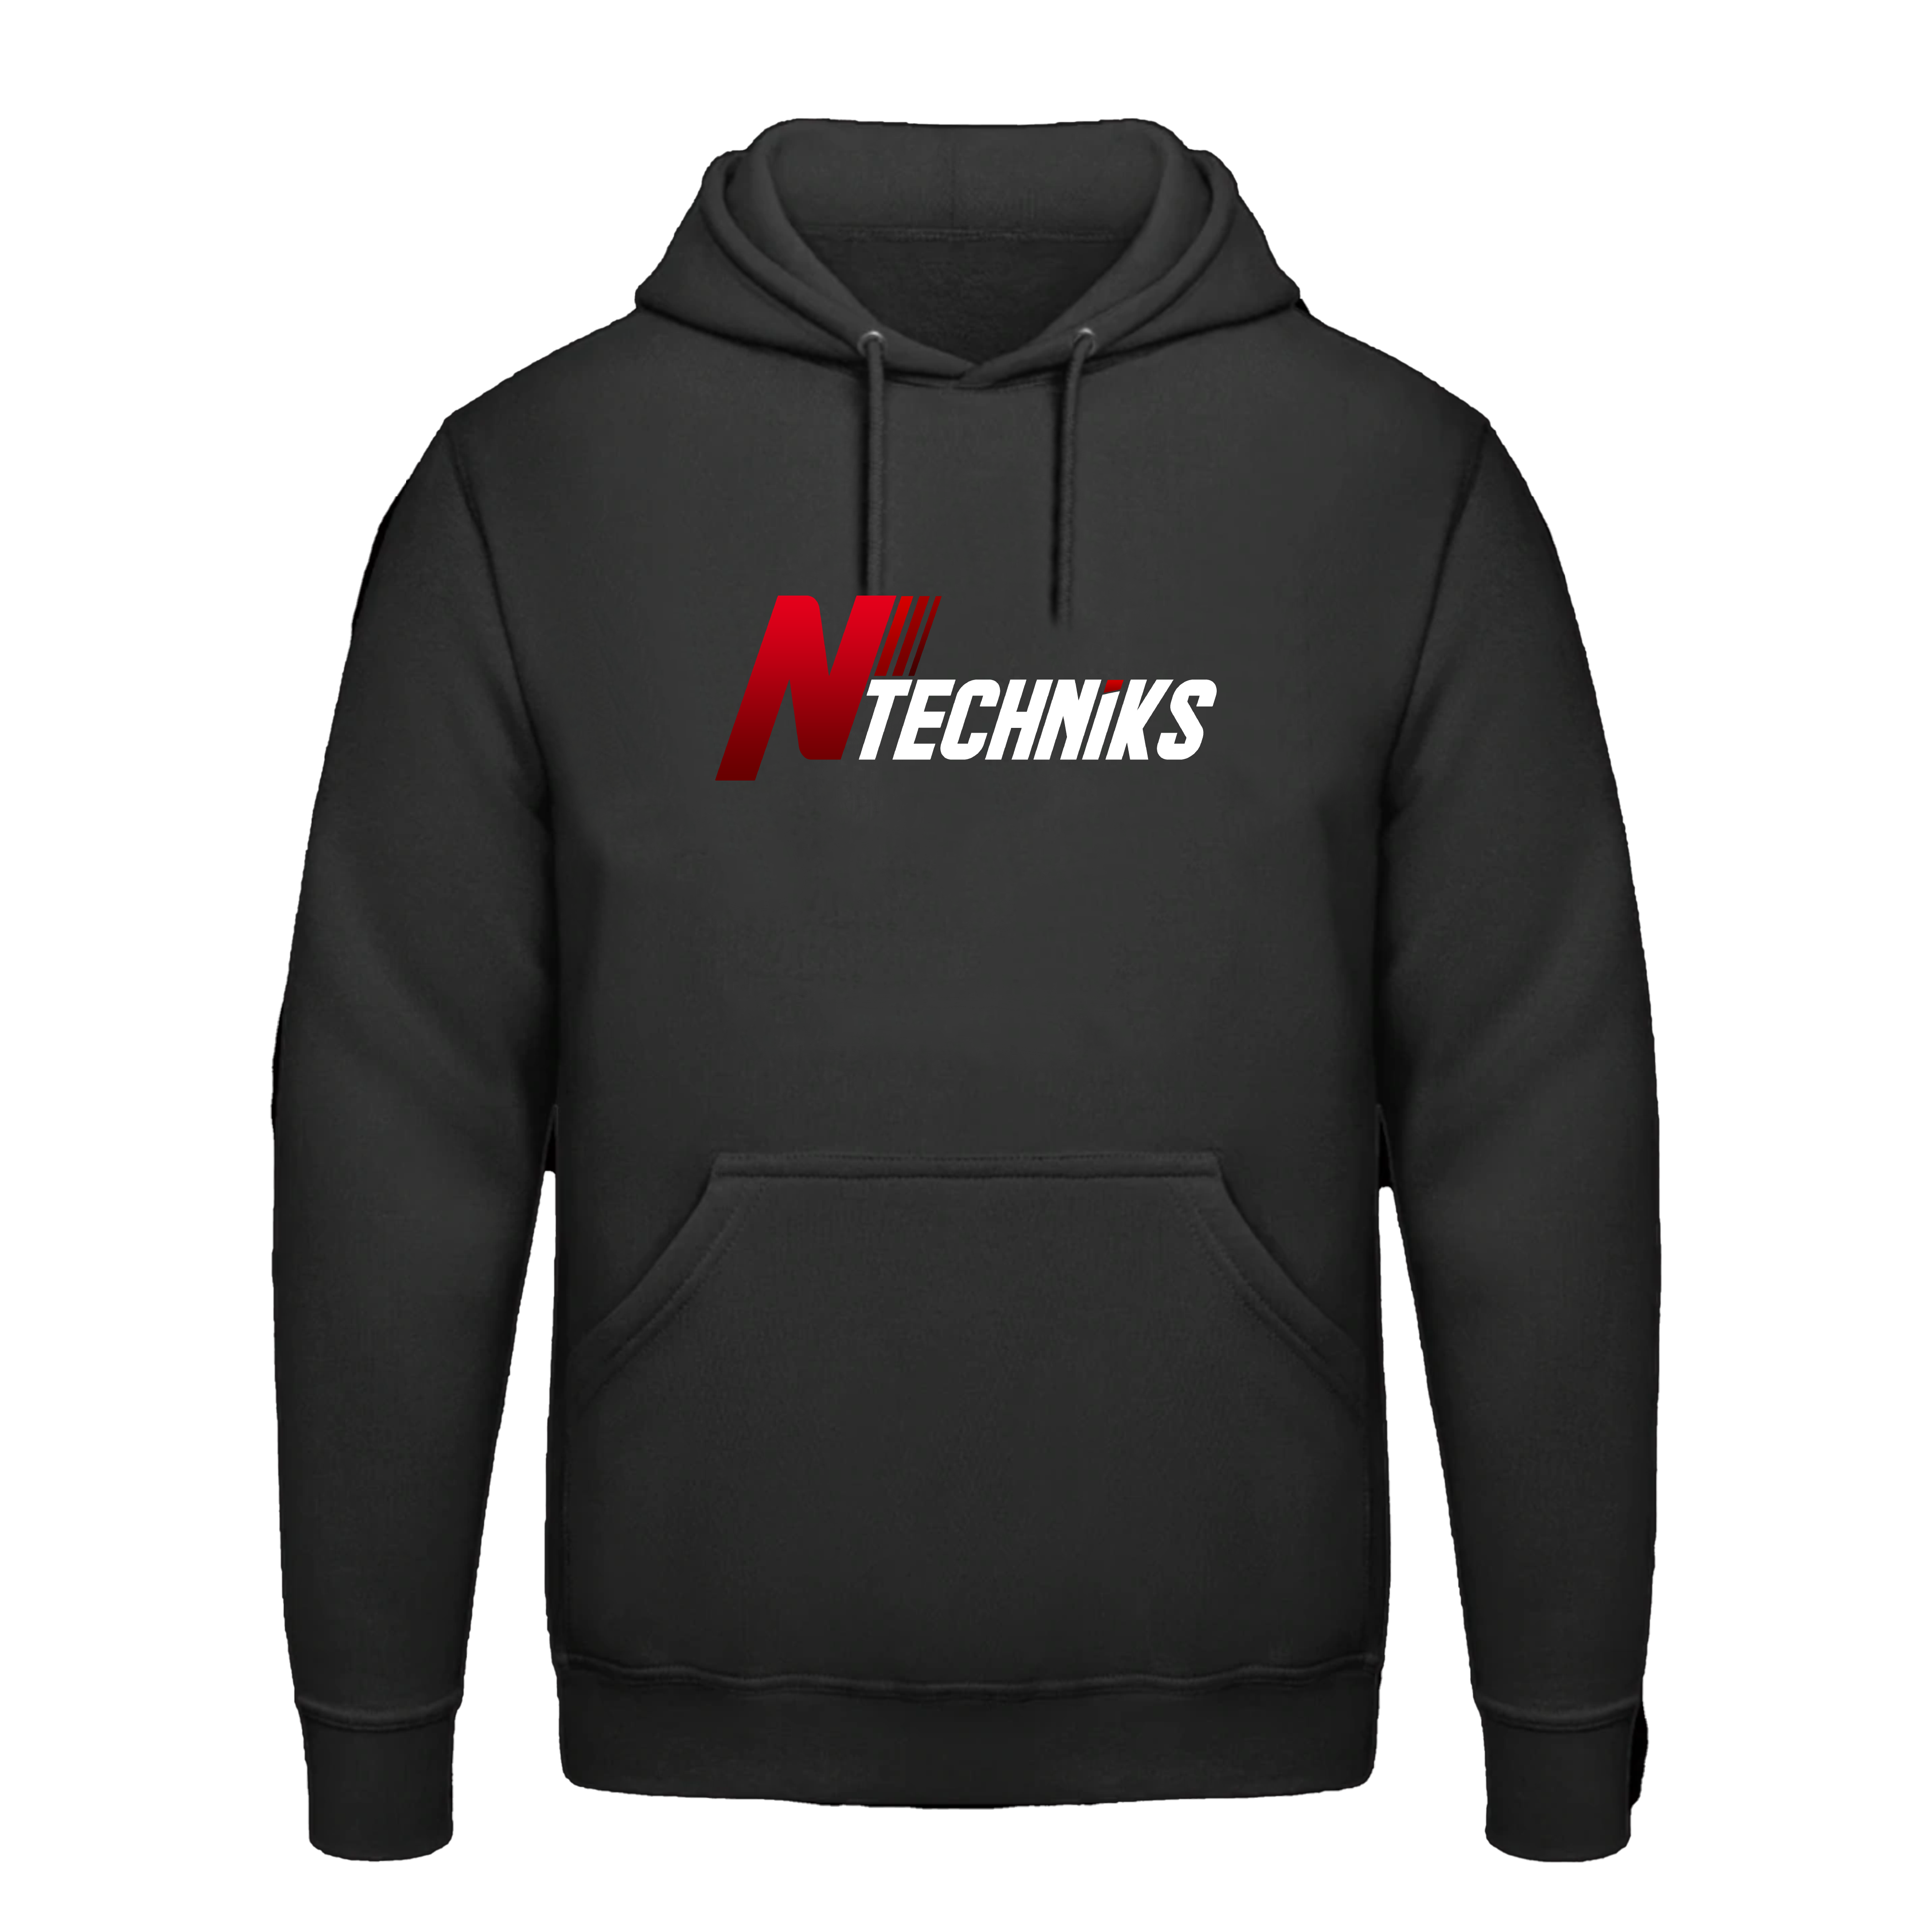 N Techniks sweatshirt/sweater EMS 2021